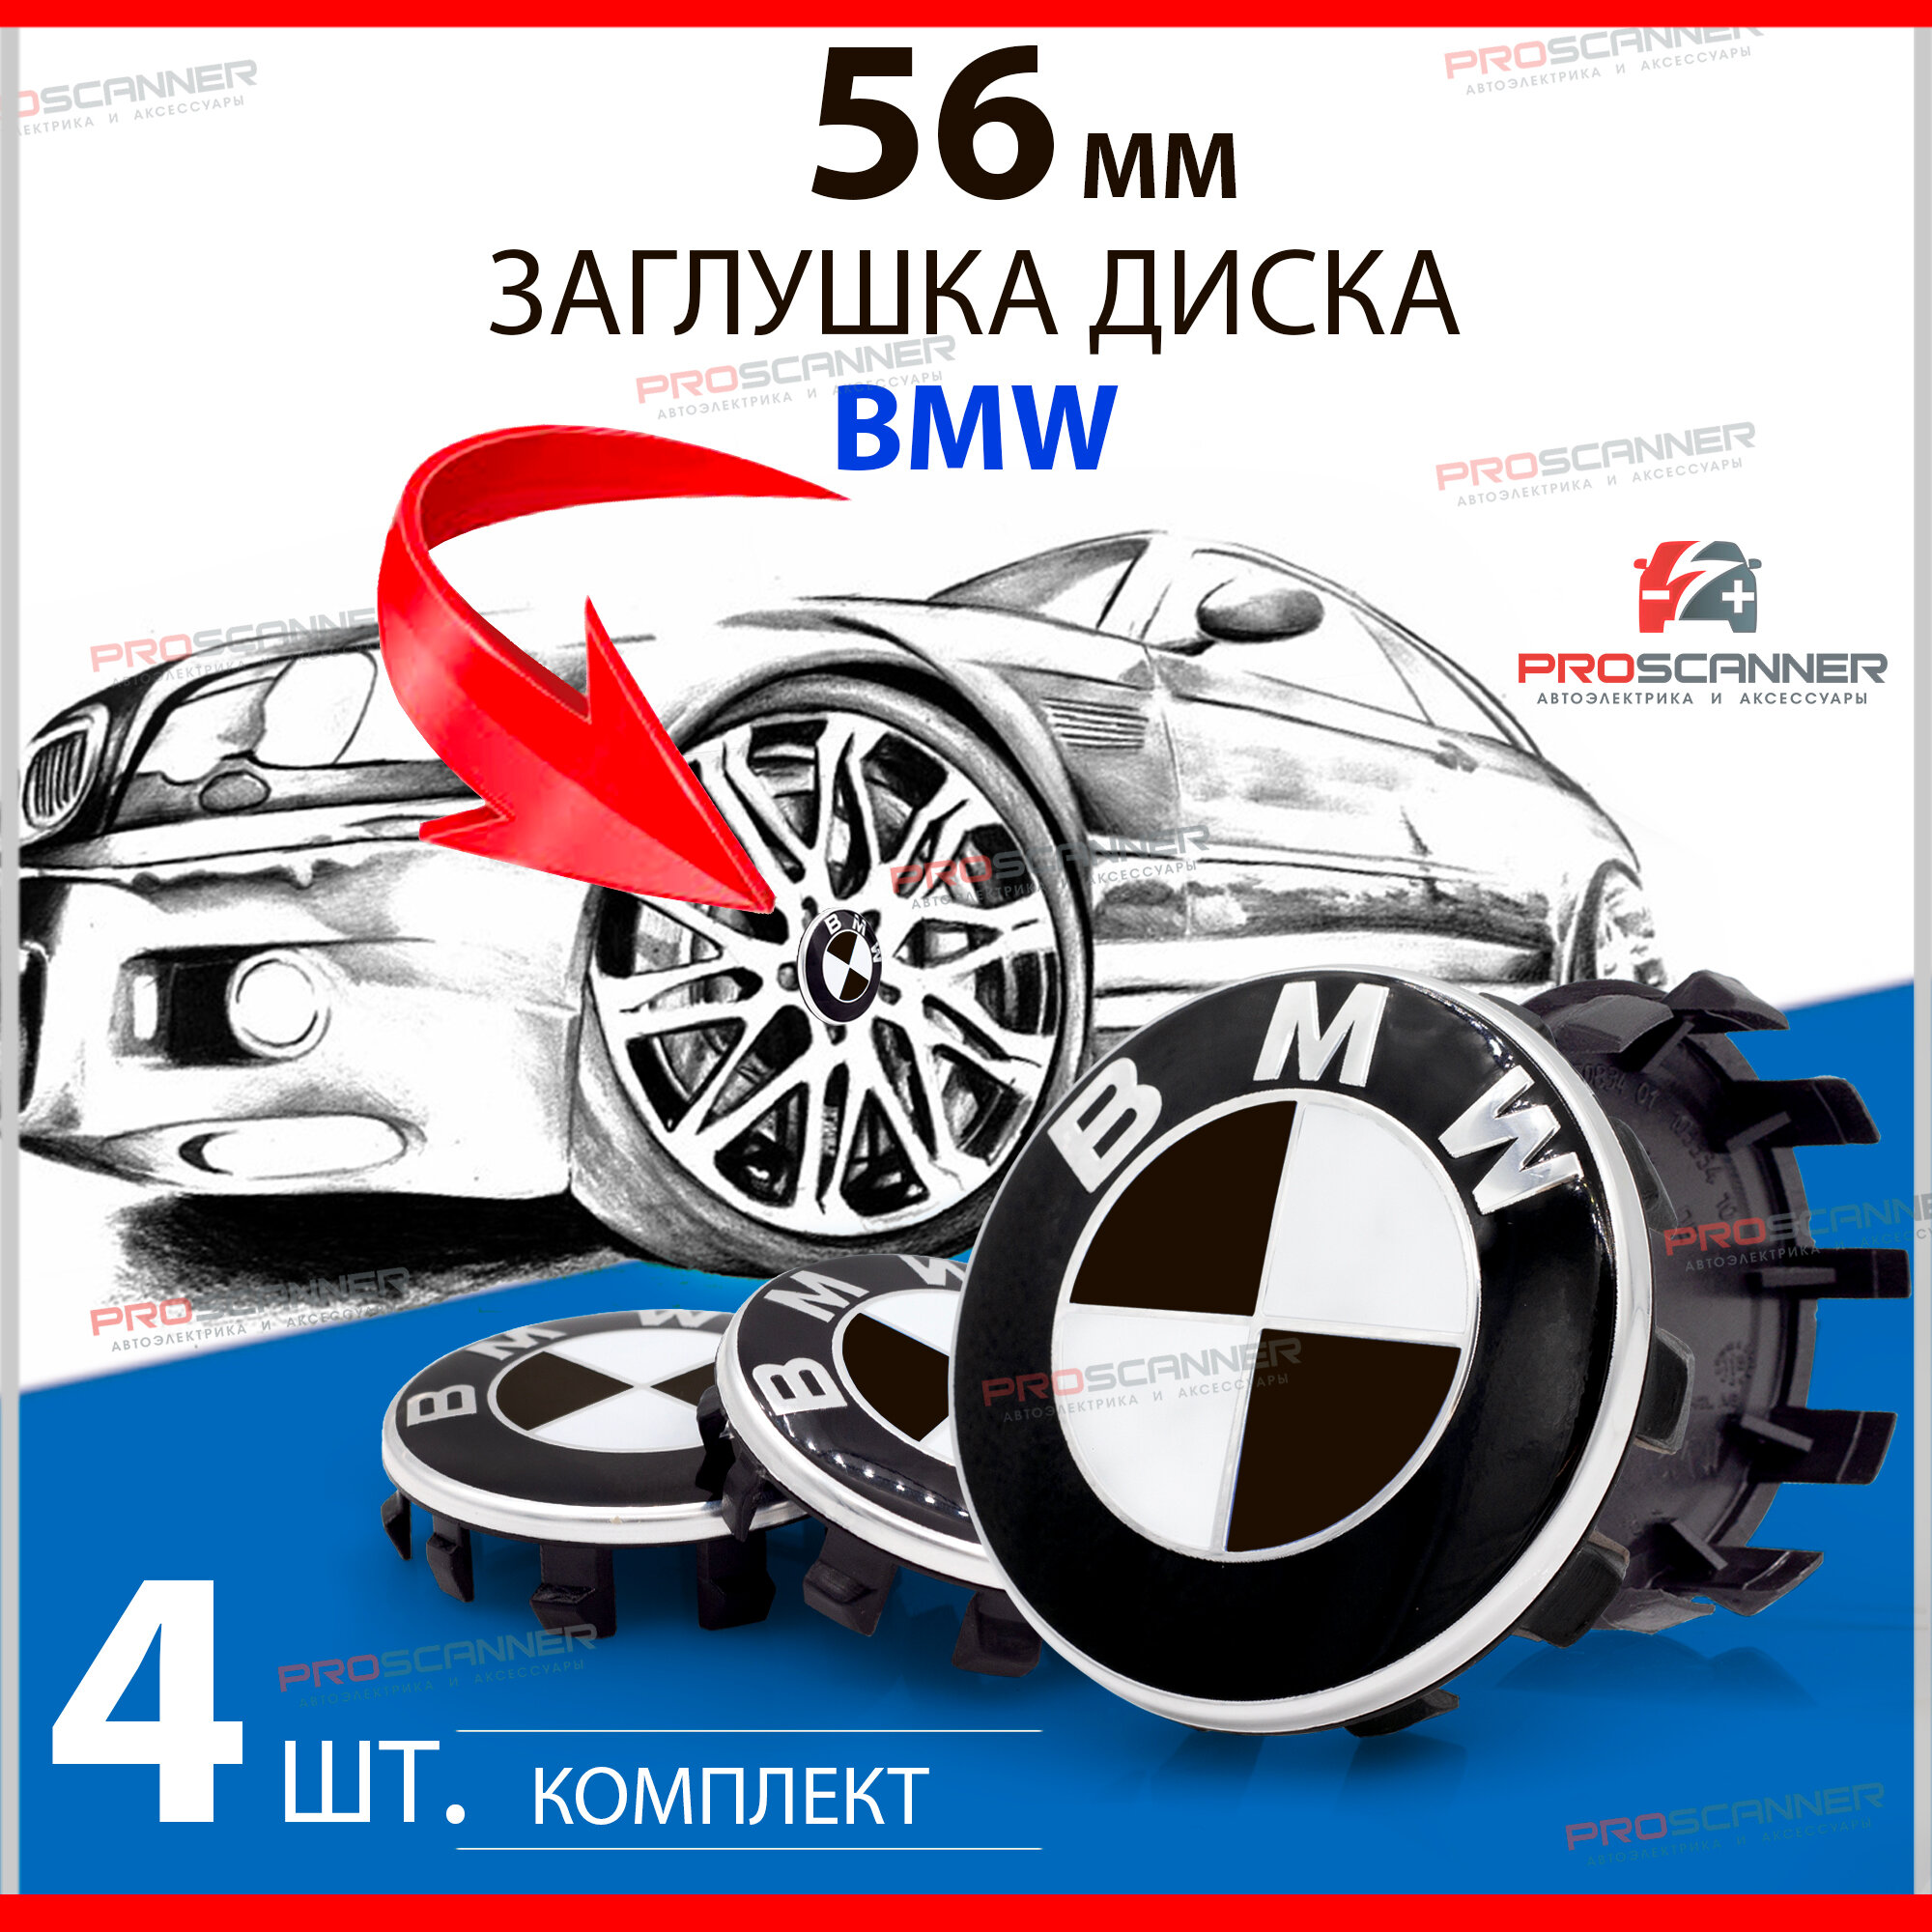 Колпачки заглушки BMW БМВ 56 мм 685083401 на литые диски - 4 штуки, черный / белый